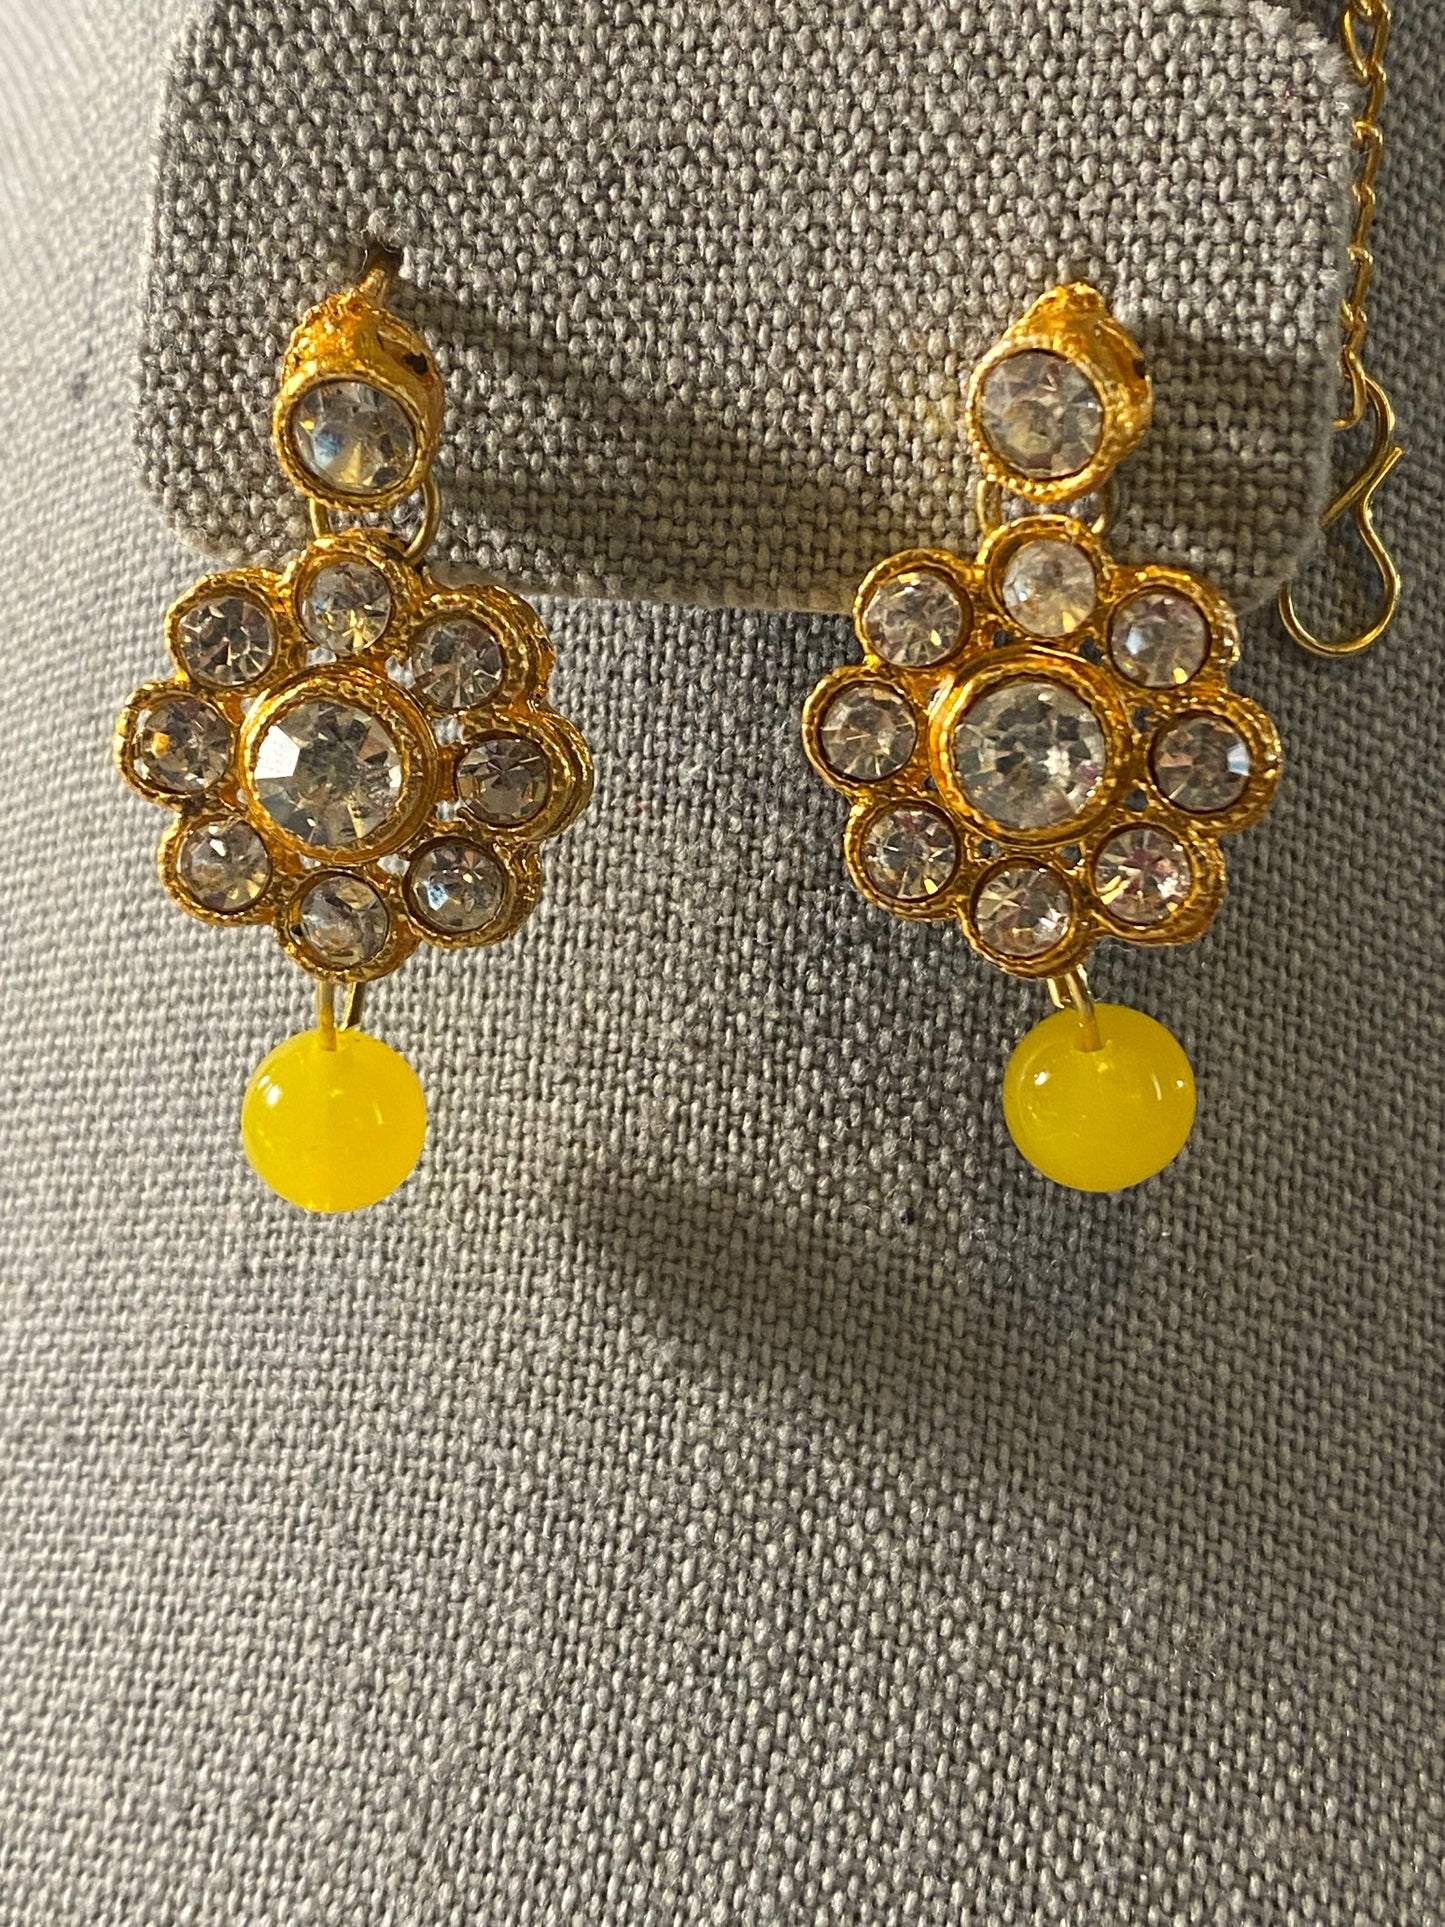 New Jewelry: Yellow Jewelry Set